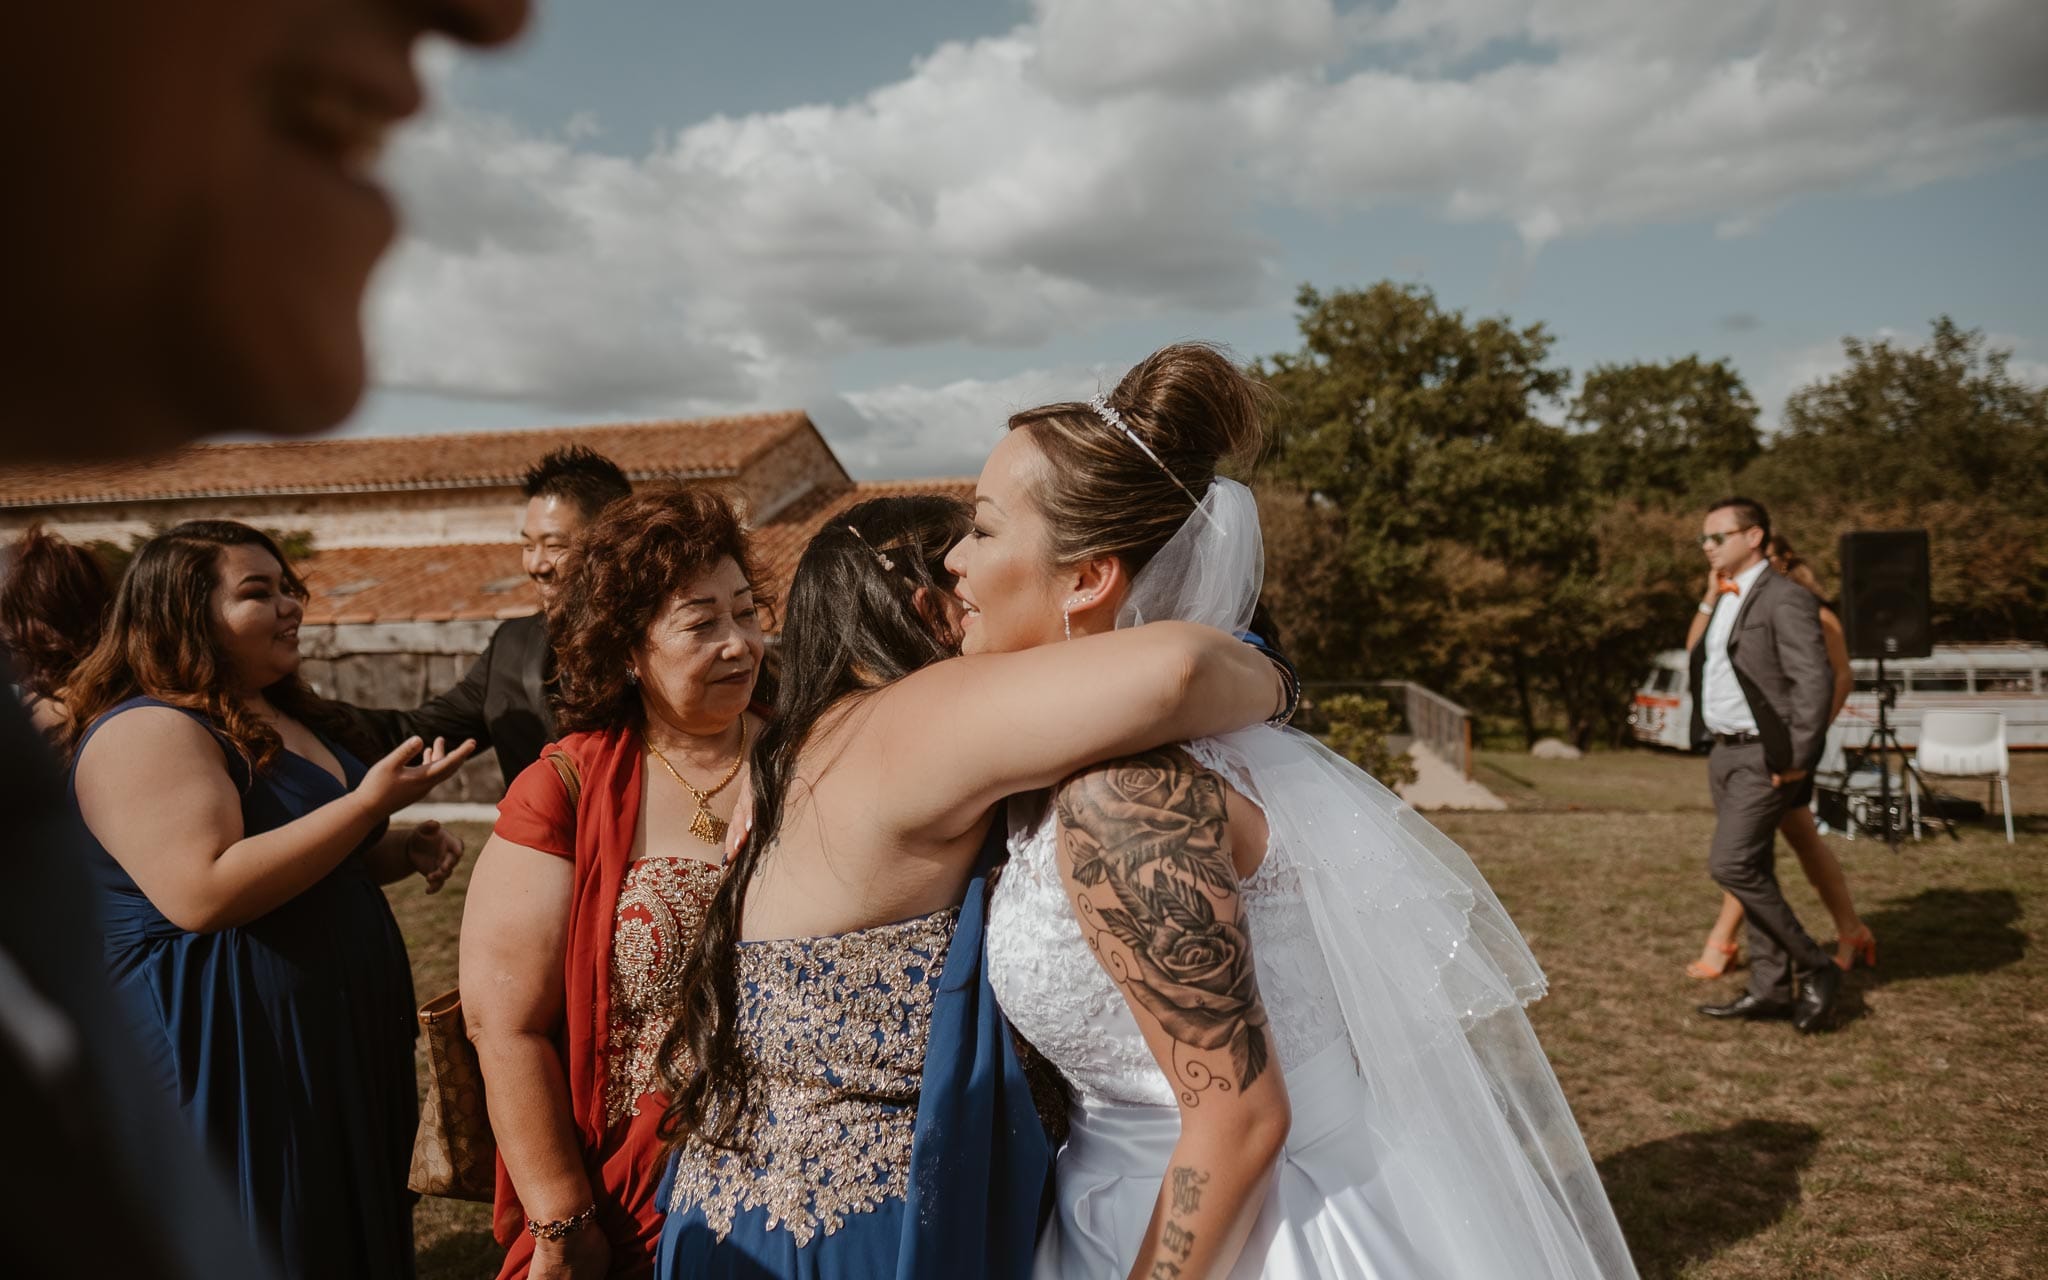 photographies d’un mariage multi-culturel asiatique américain en Vendée